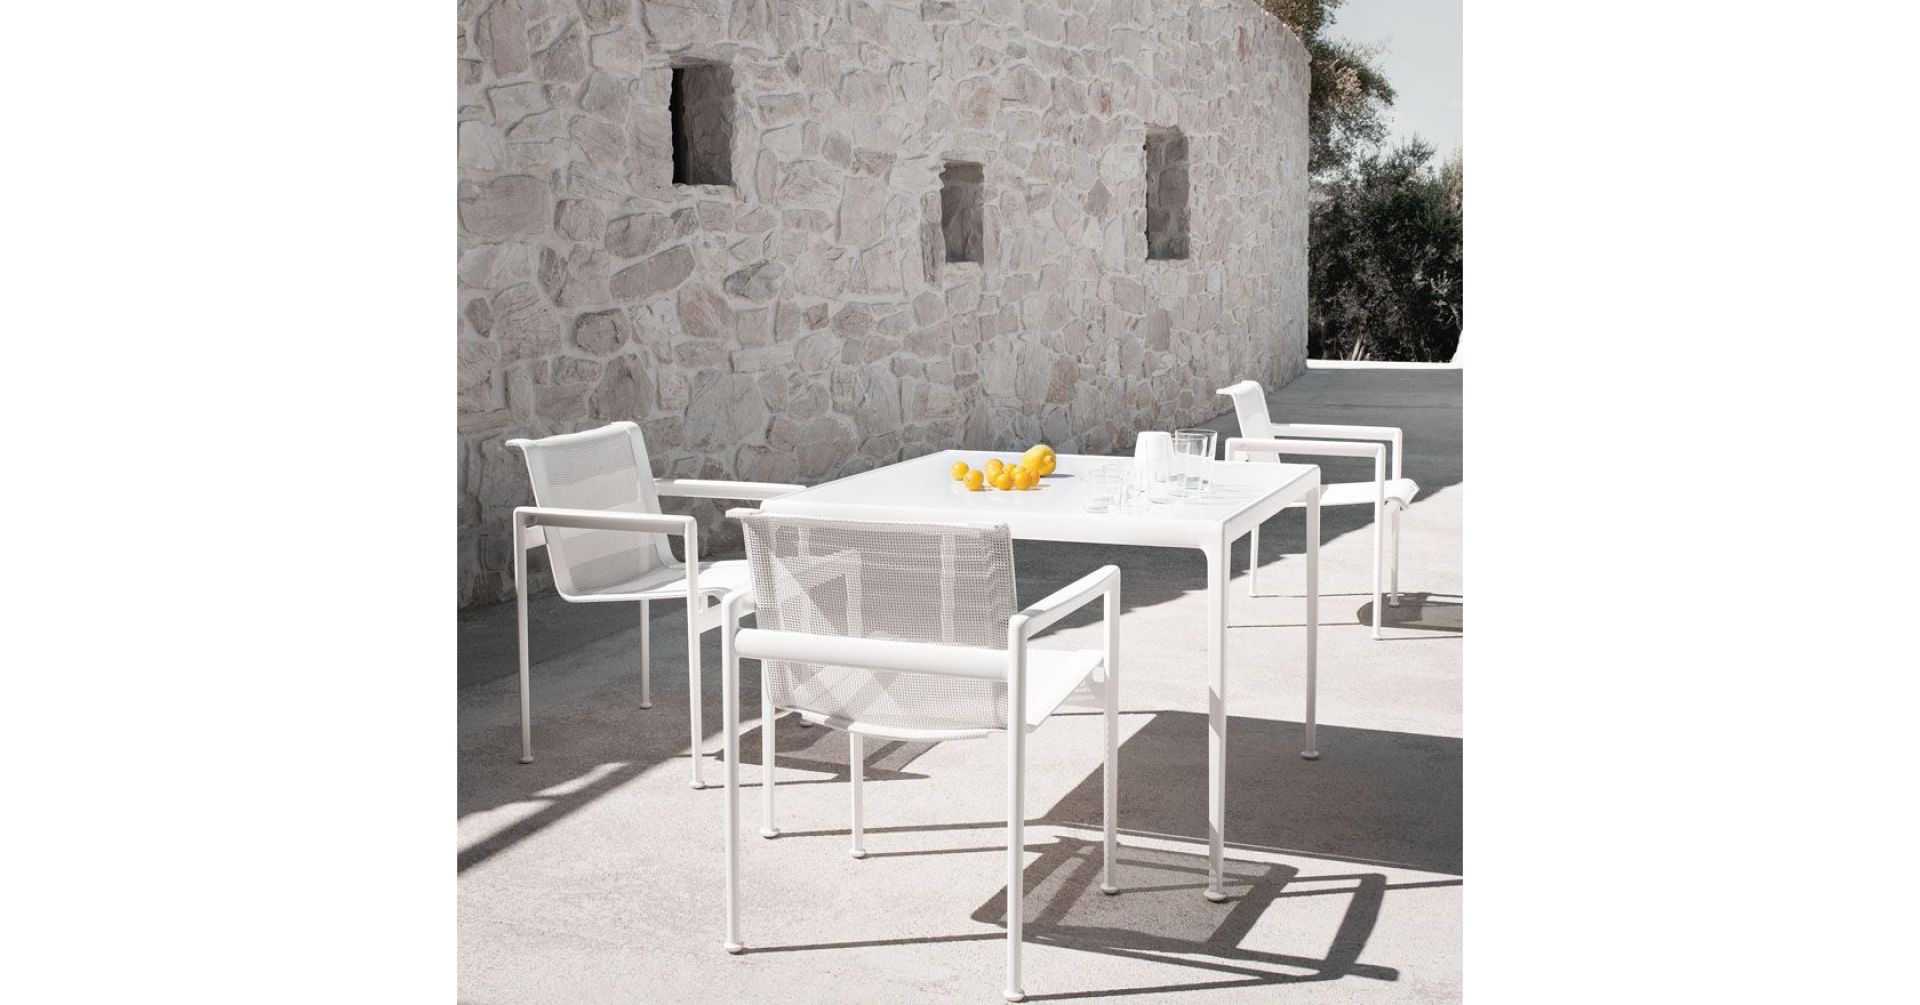 Ramy krzeseł, stołów i stolików pokryte są poliestrową powłoką proszkową dostępną w różnej palecie barw, a więc odporne na korozje. Fot. Knoll / Mood Design